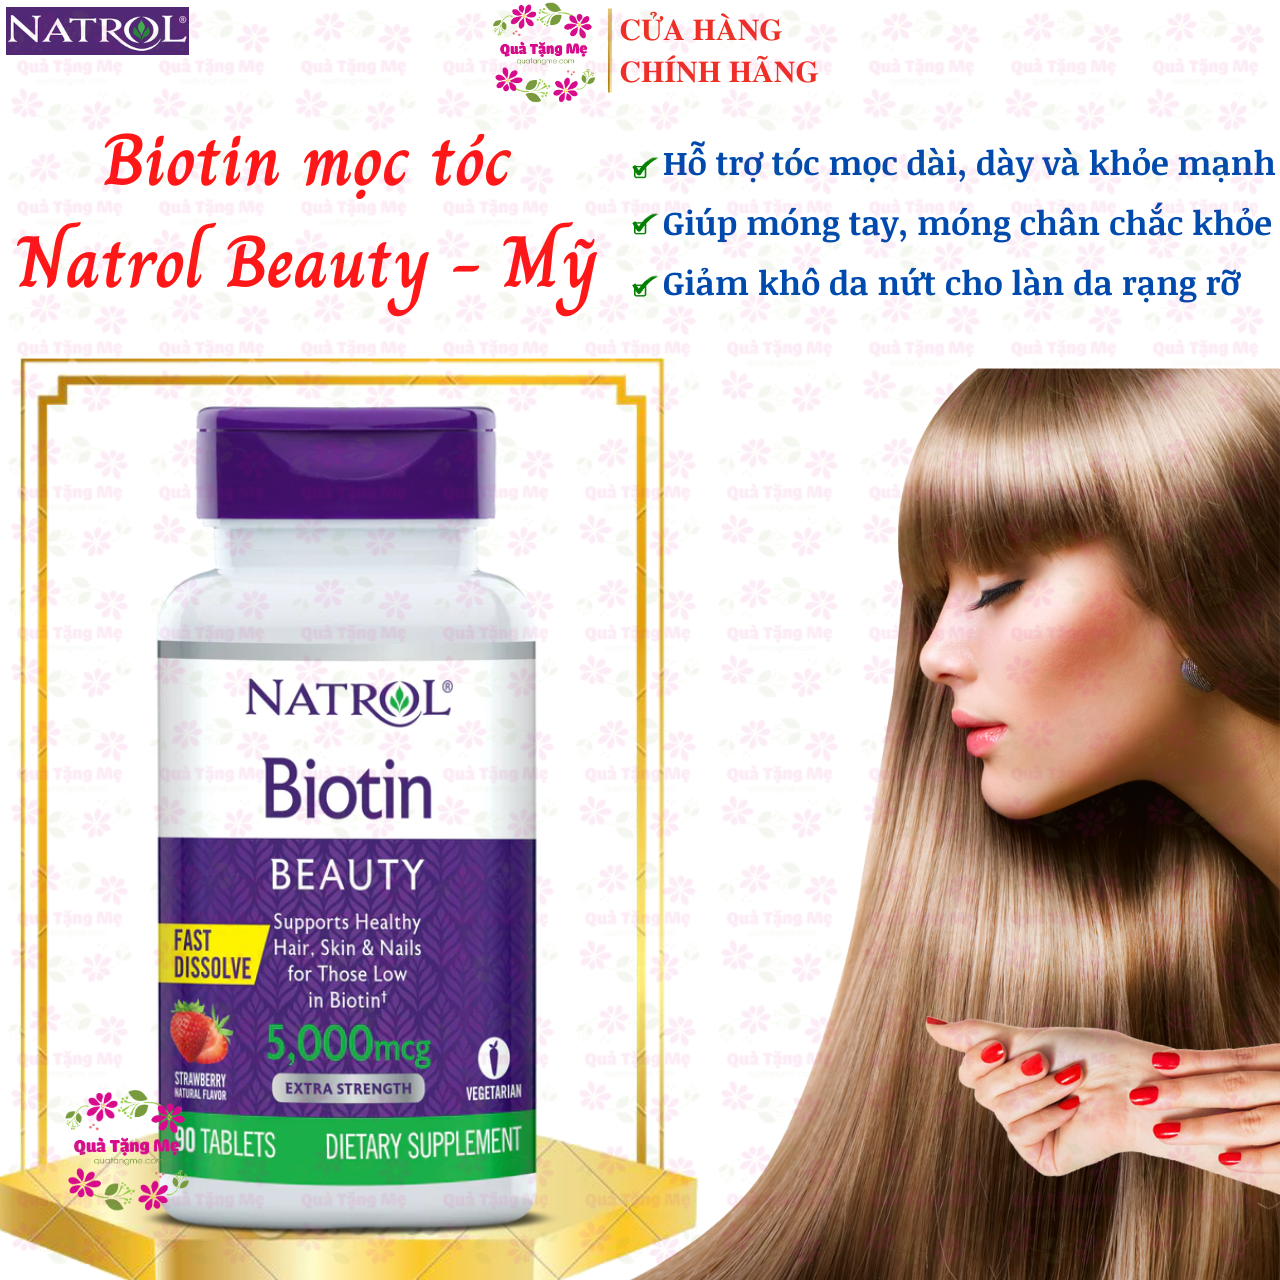 Biotin mọc tóc Natrol Beauty Mỹ